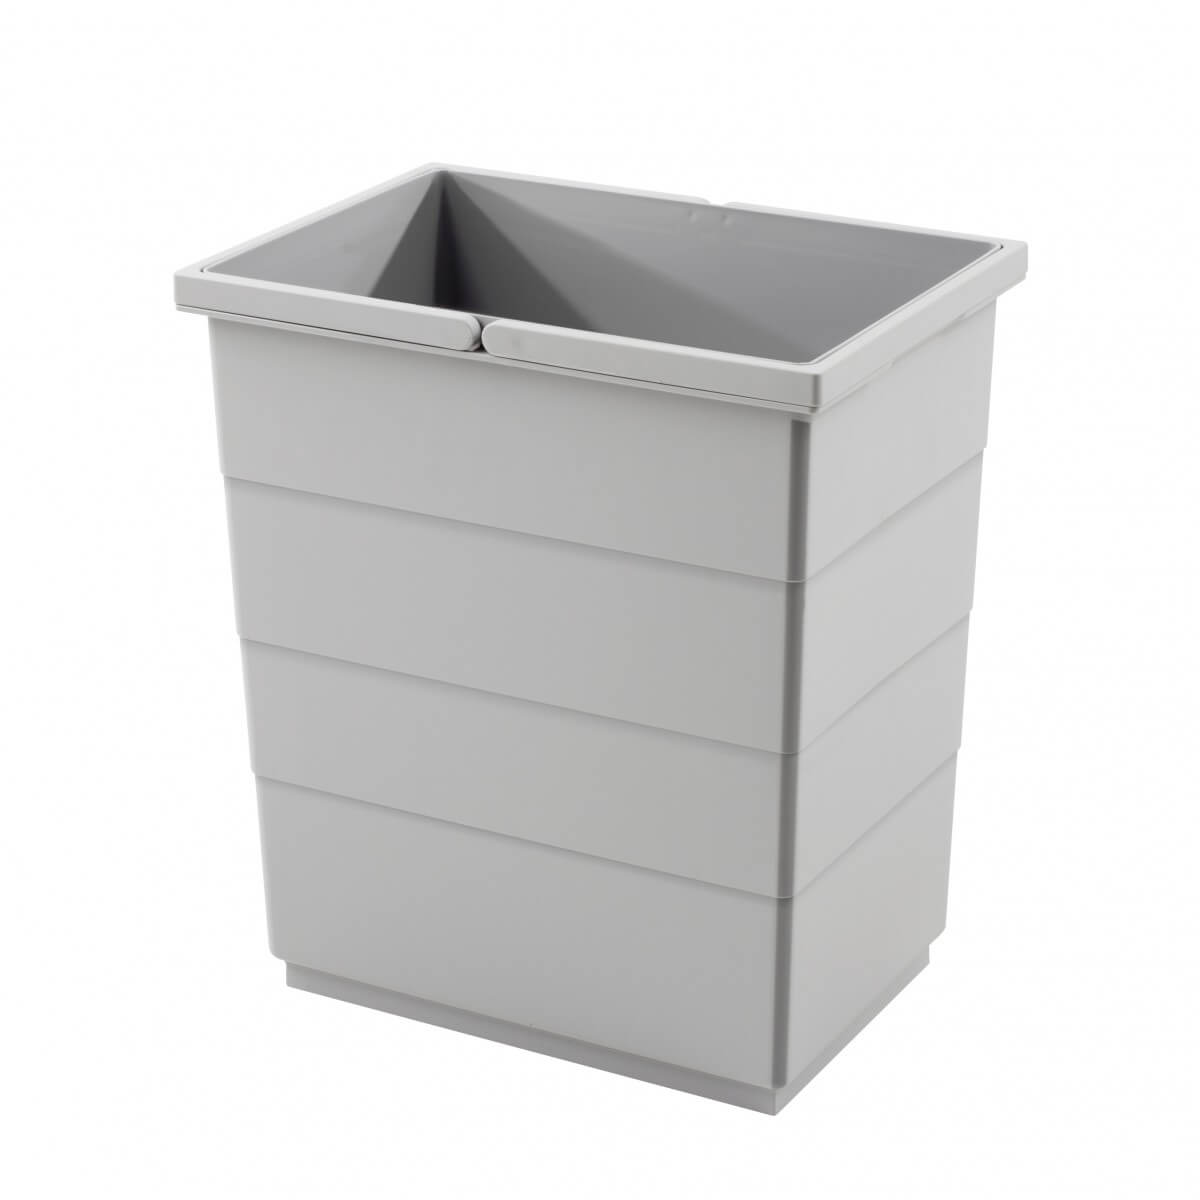 Hailo Trento Eco Trio waste Separator Recyclingl Bin 33 White NEW free postage 